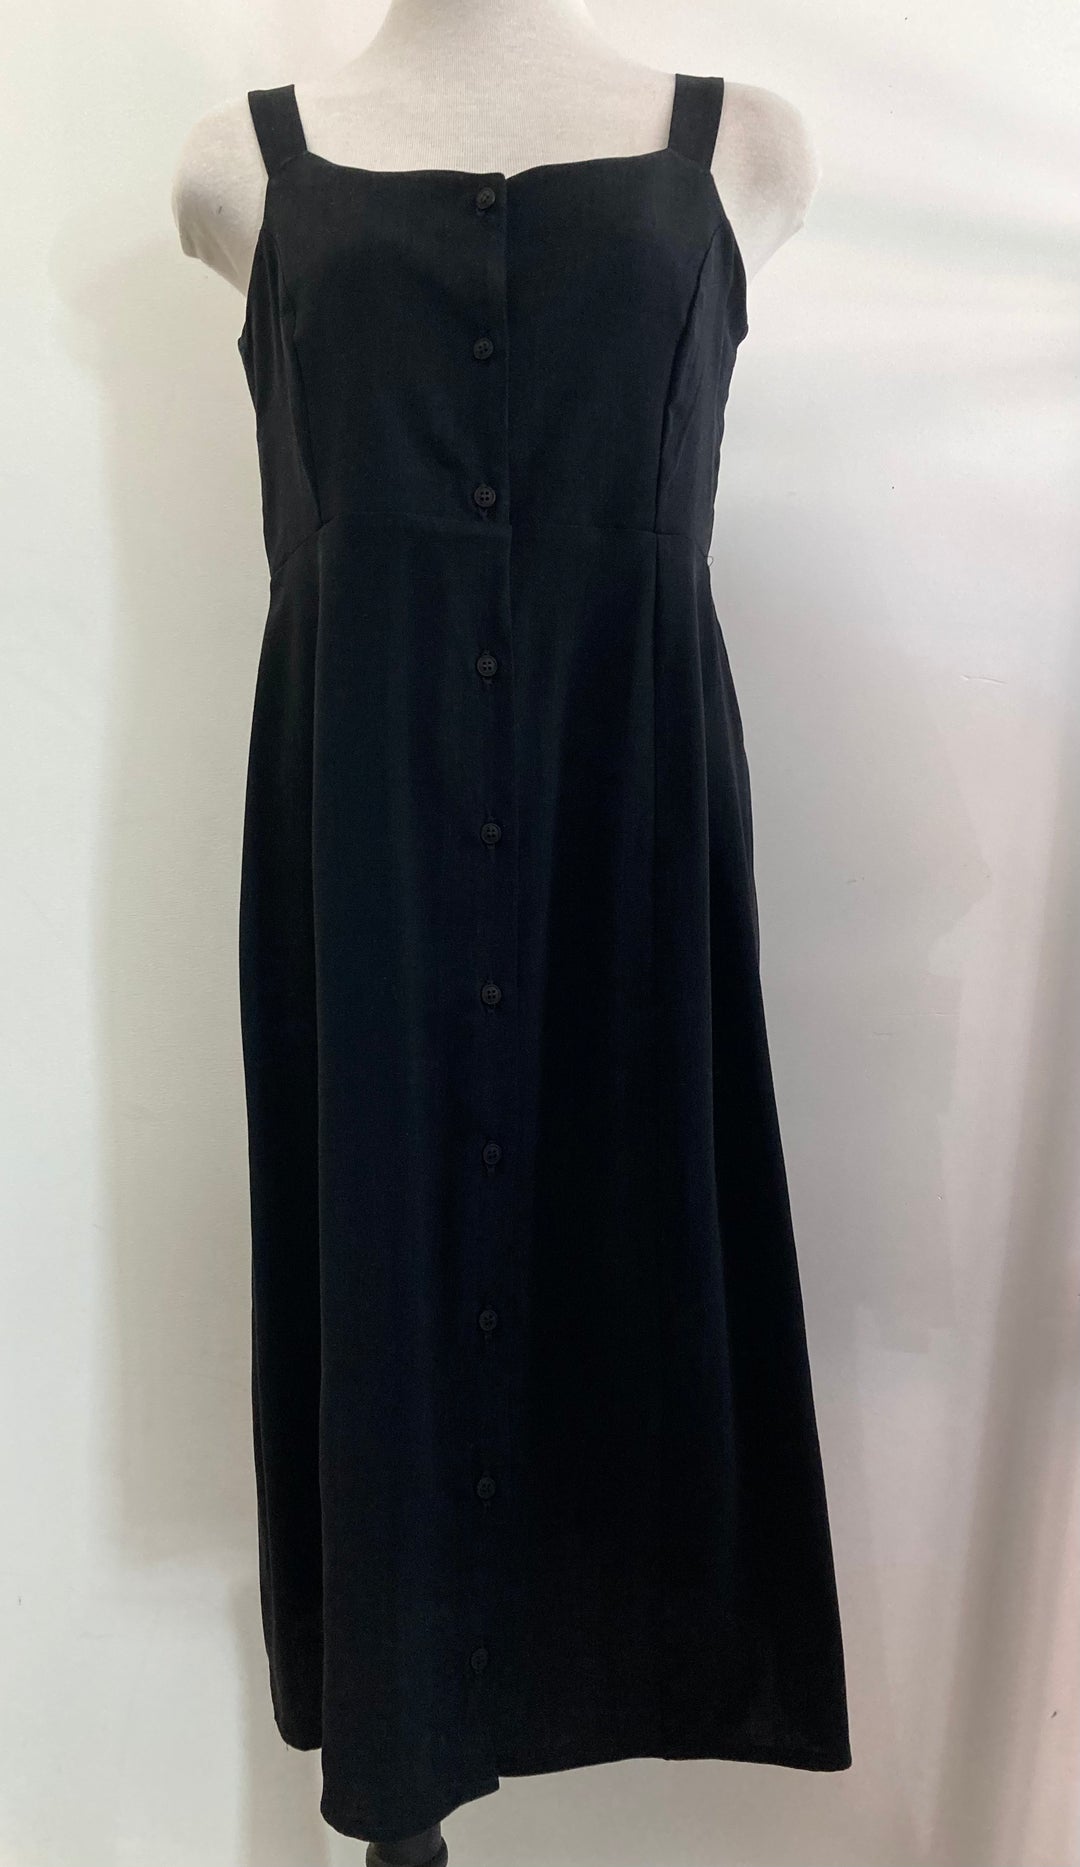 Begonia Dress / Black